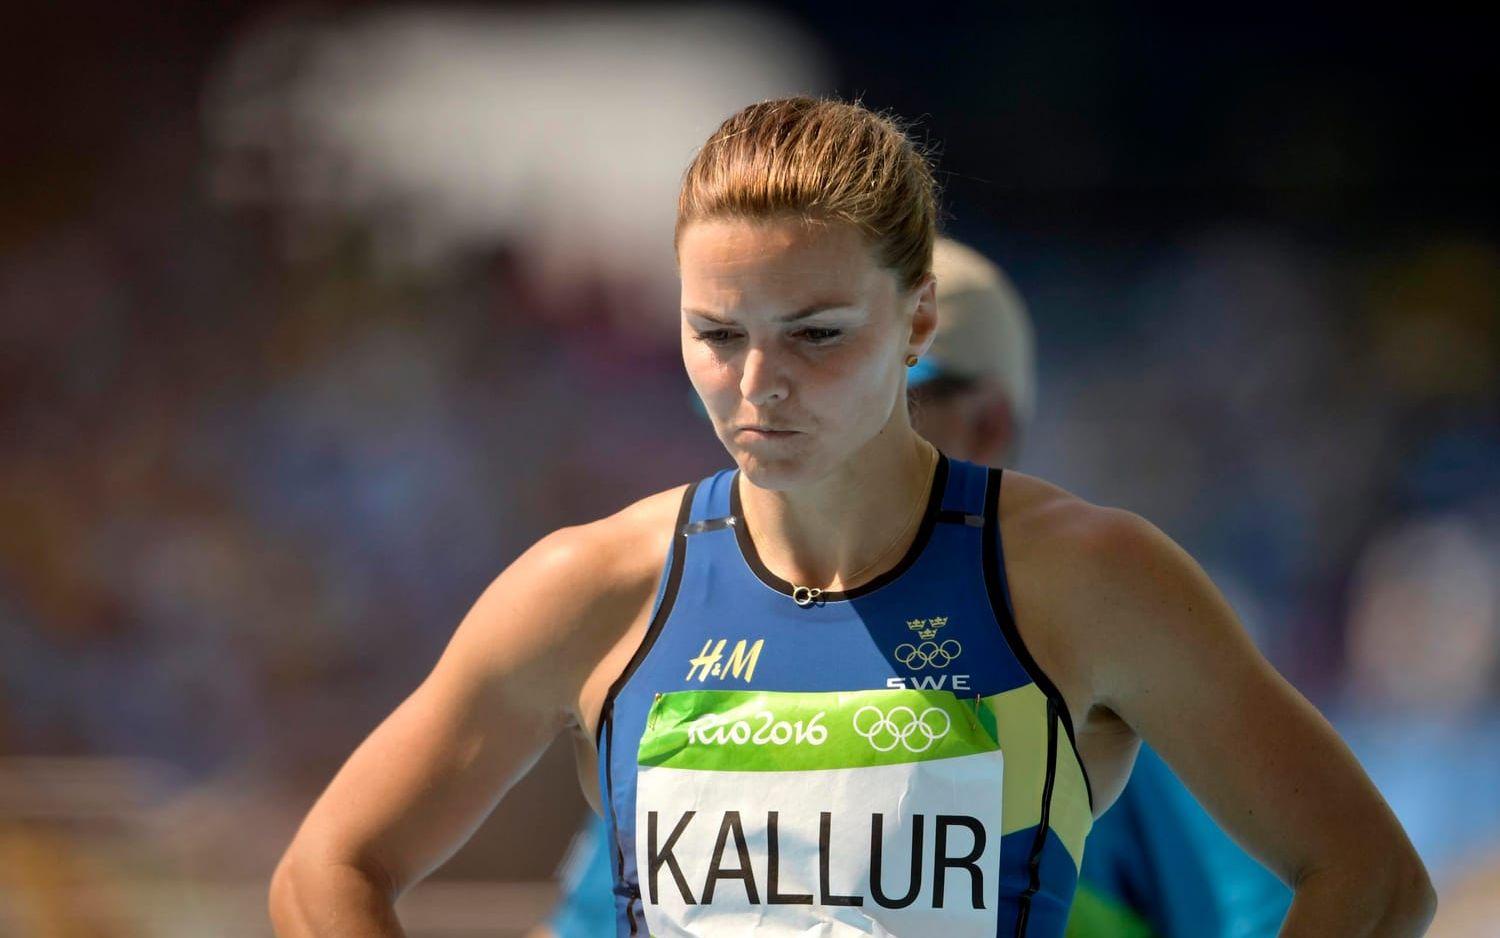 Susanna Kallur deppar efter kvalet på 100 meter häck den 16 augusti 2016 under OS i Rio de Janeiro. Bild: Joel Marklund, Bildbyrån